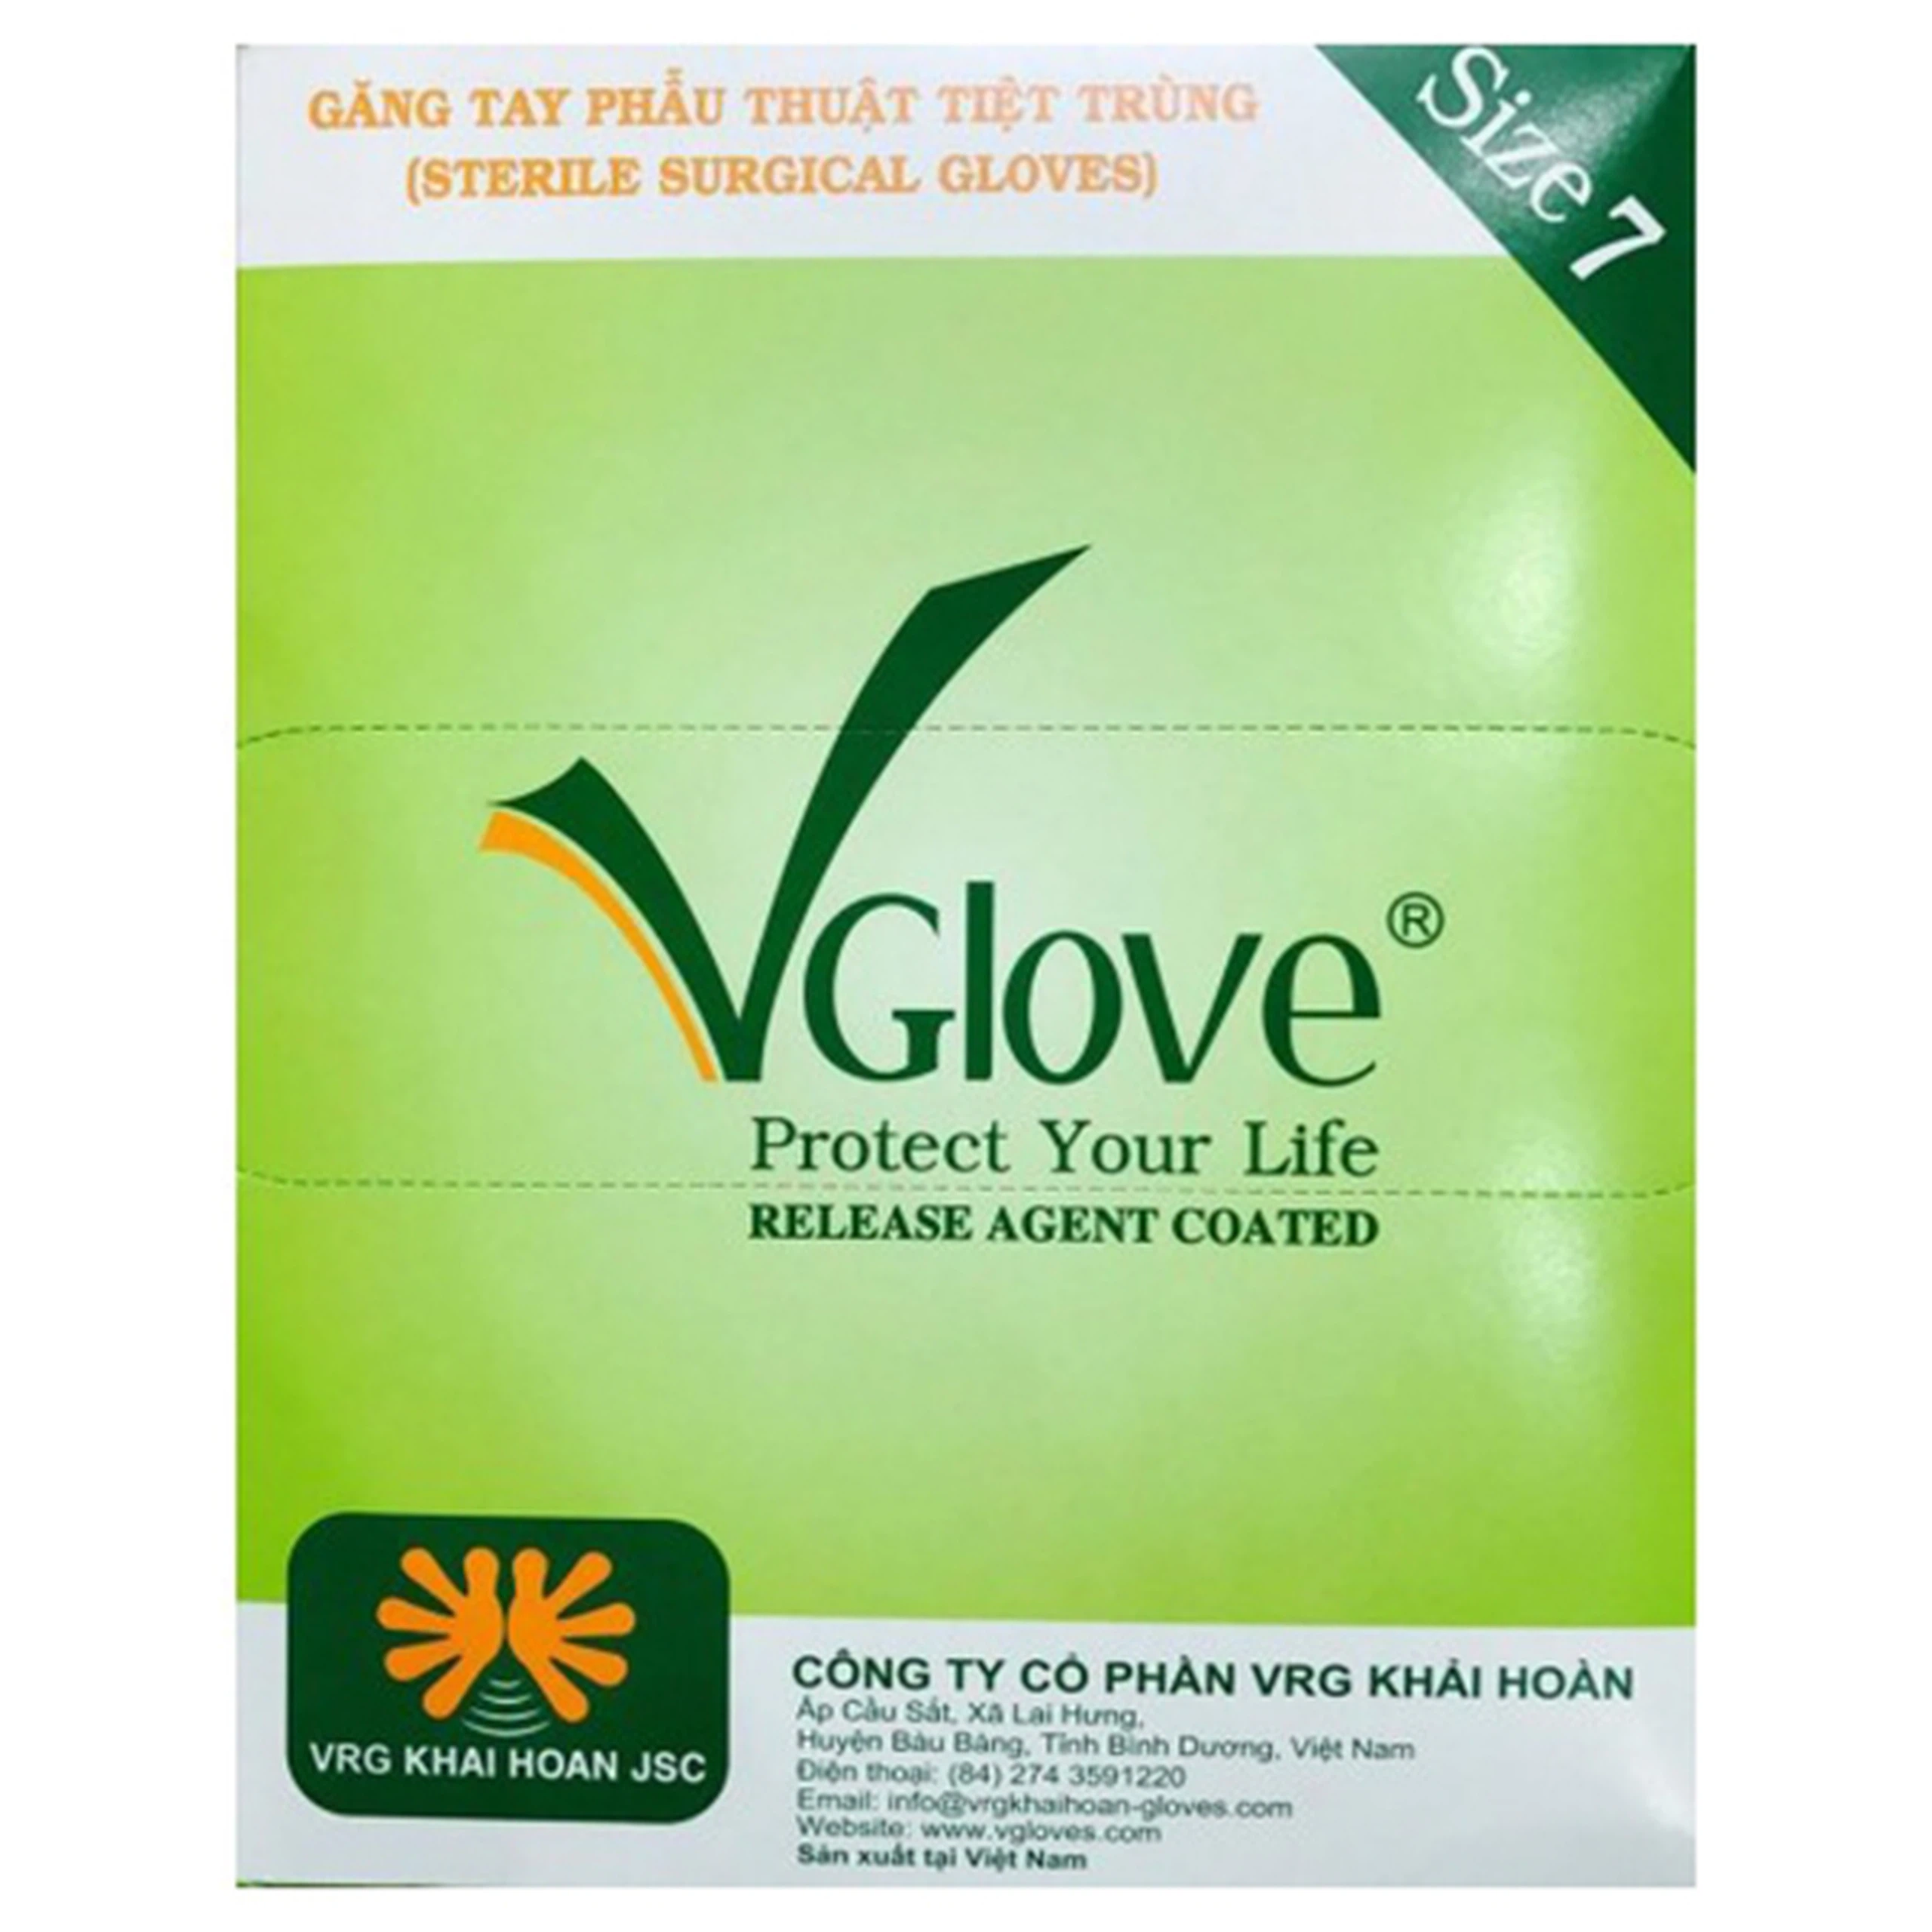 Găng tay phẫu thuật Surgical Gloves 7 VGlove tránh lây truyền bệnh trong quá trình khám (1 đôi)